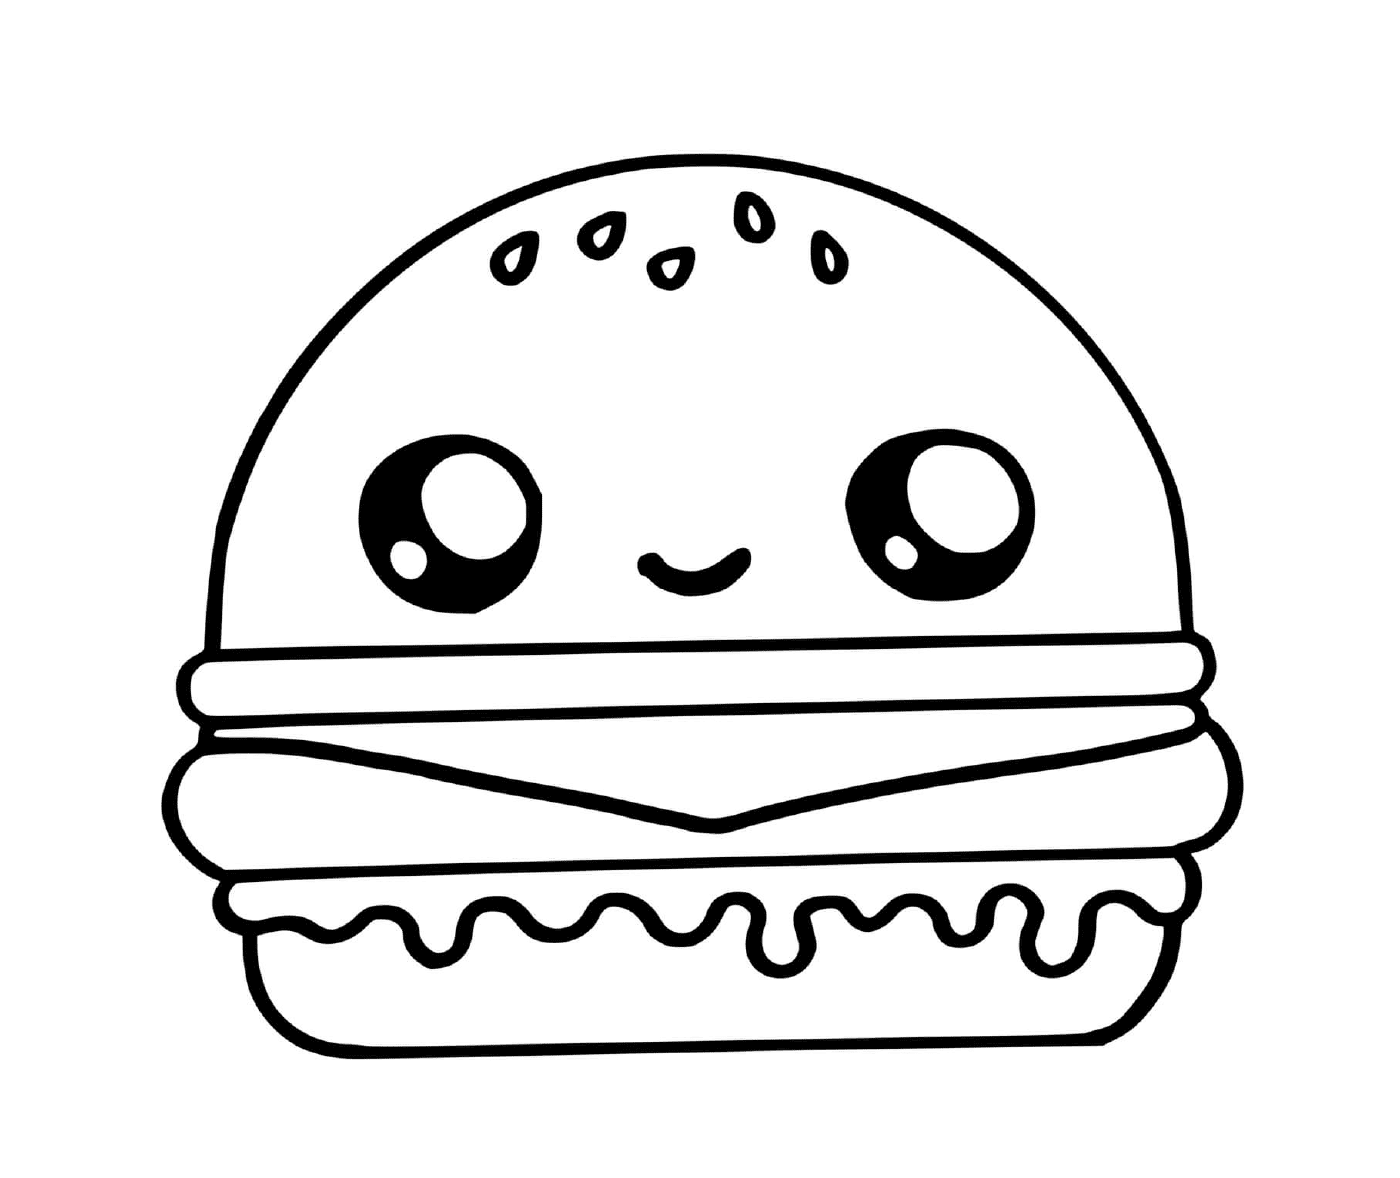  Ein Hamburger 